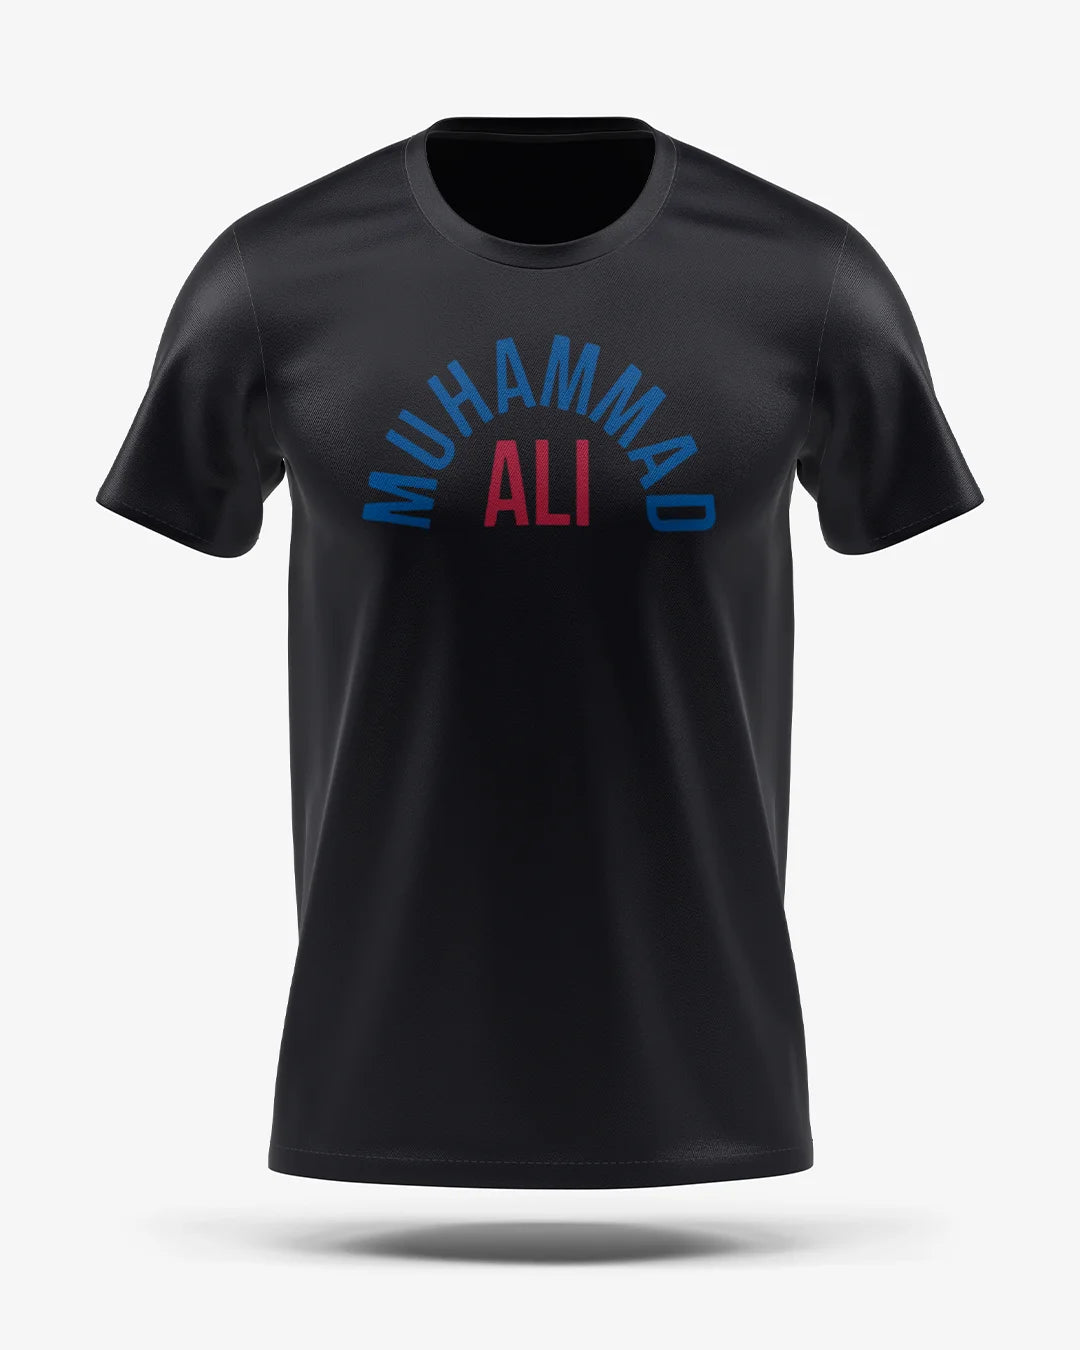 Camiseta Esporte Dry Fit - Ali Blue and Red